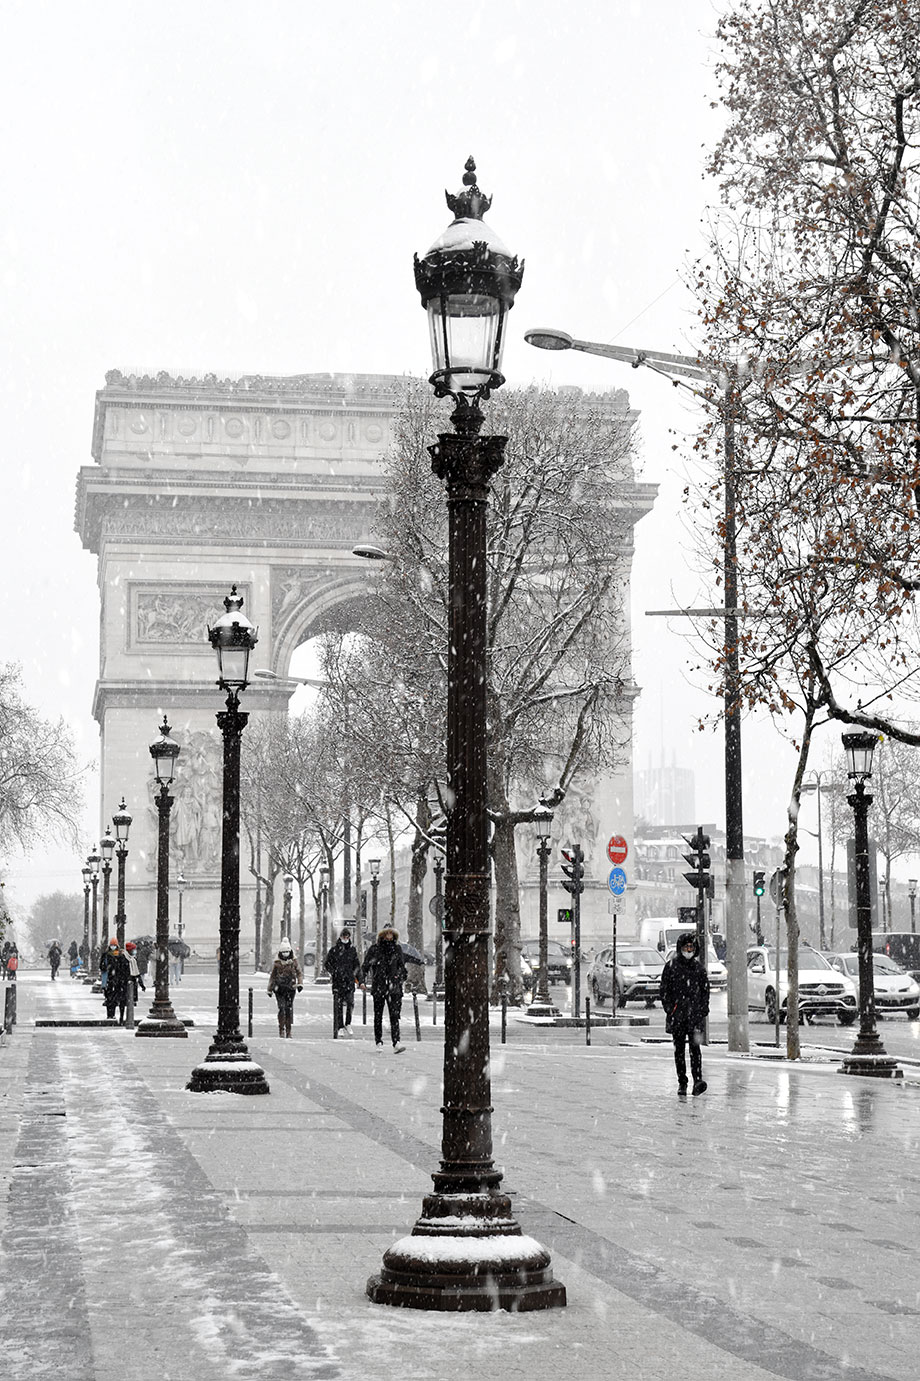 Avenue des Champs-Elysees and the Triumphal Arc under snowfall, Paris, France 2021 (Nos Dren).